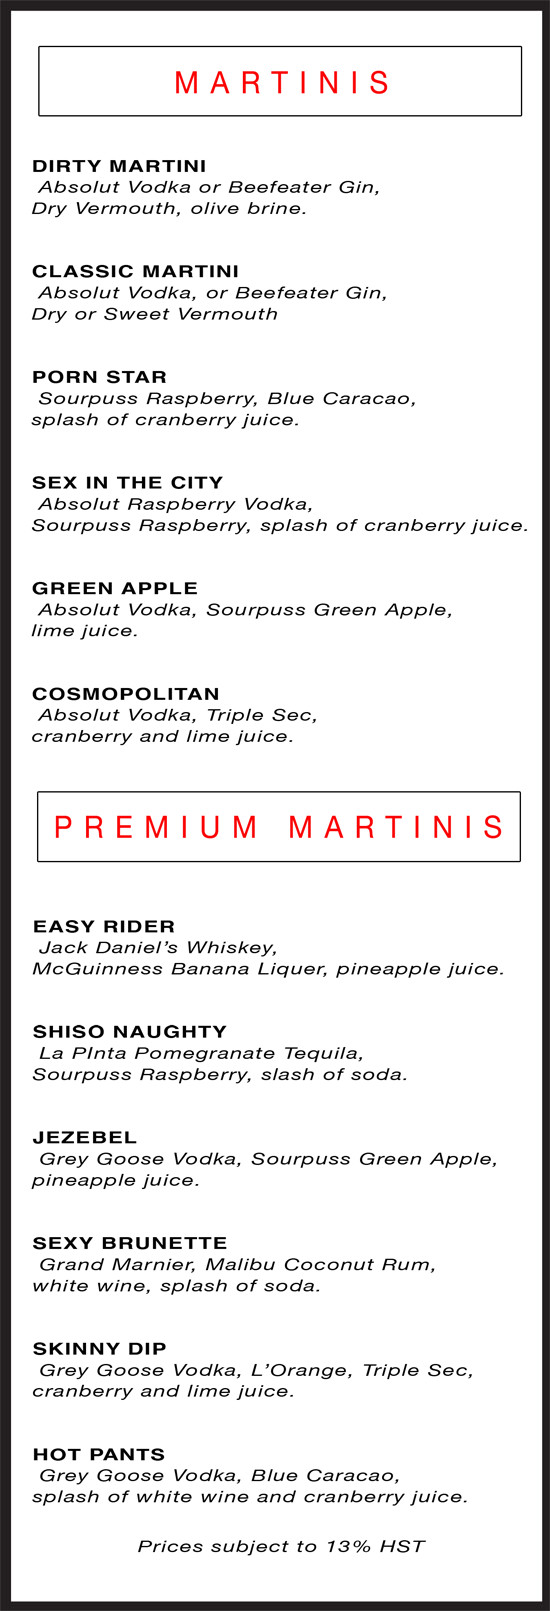 DM drink menu 2015-p1